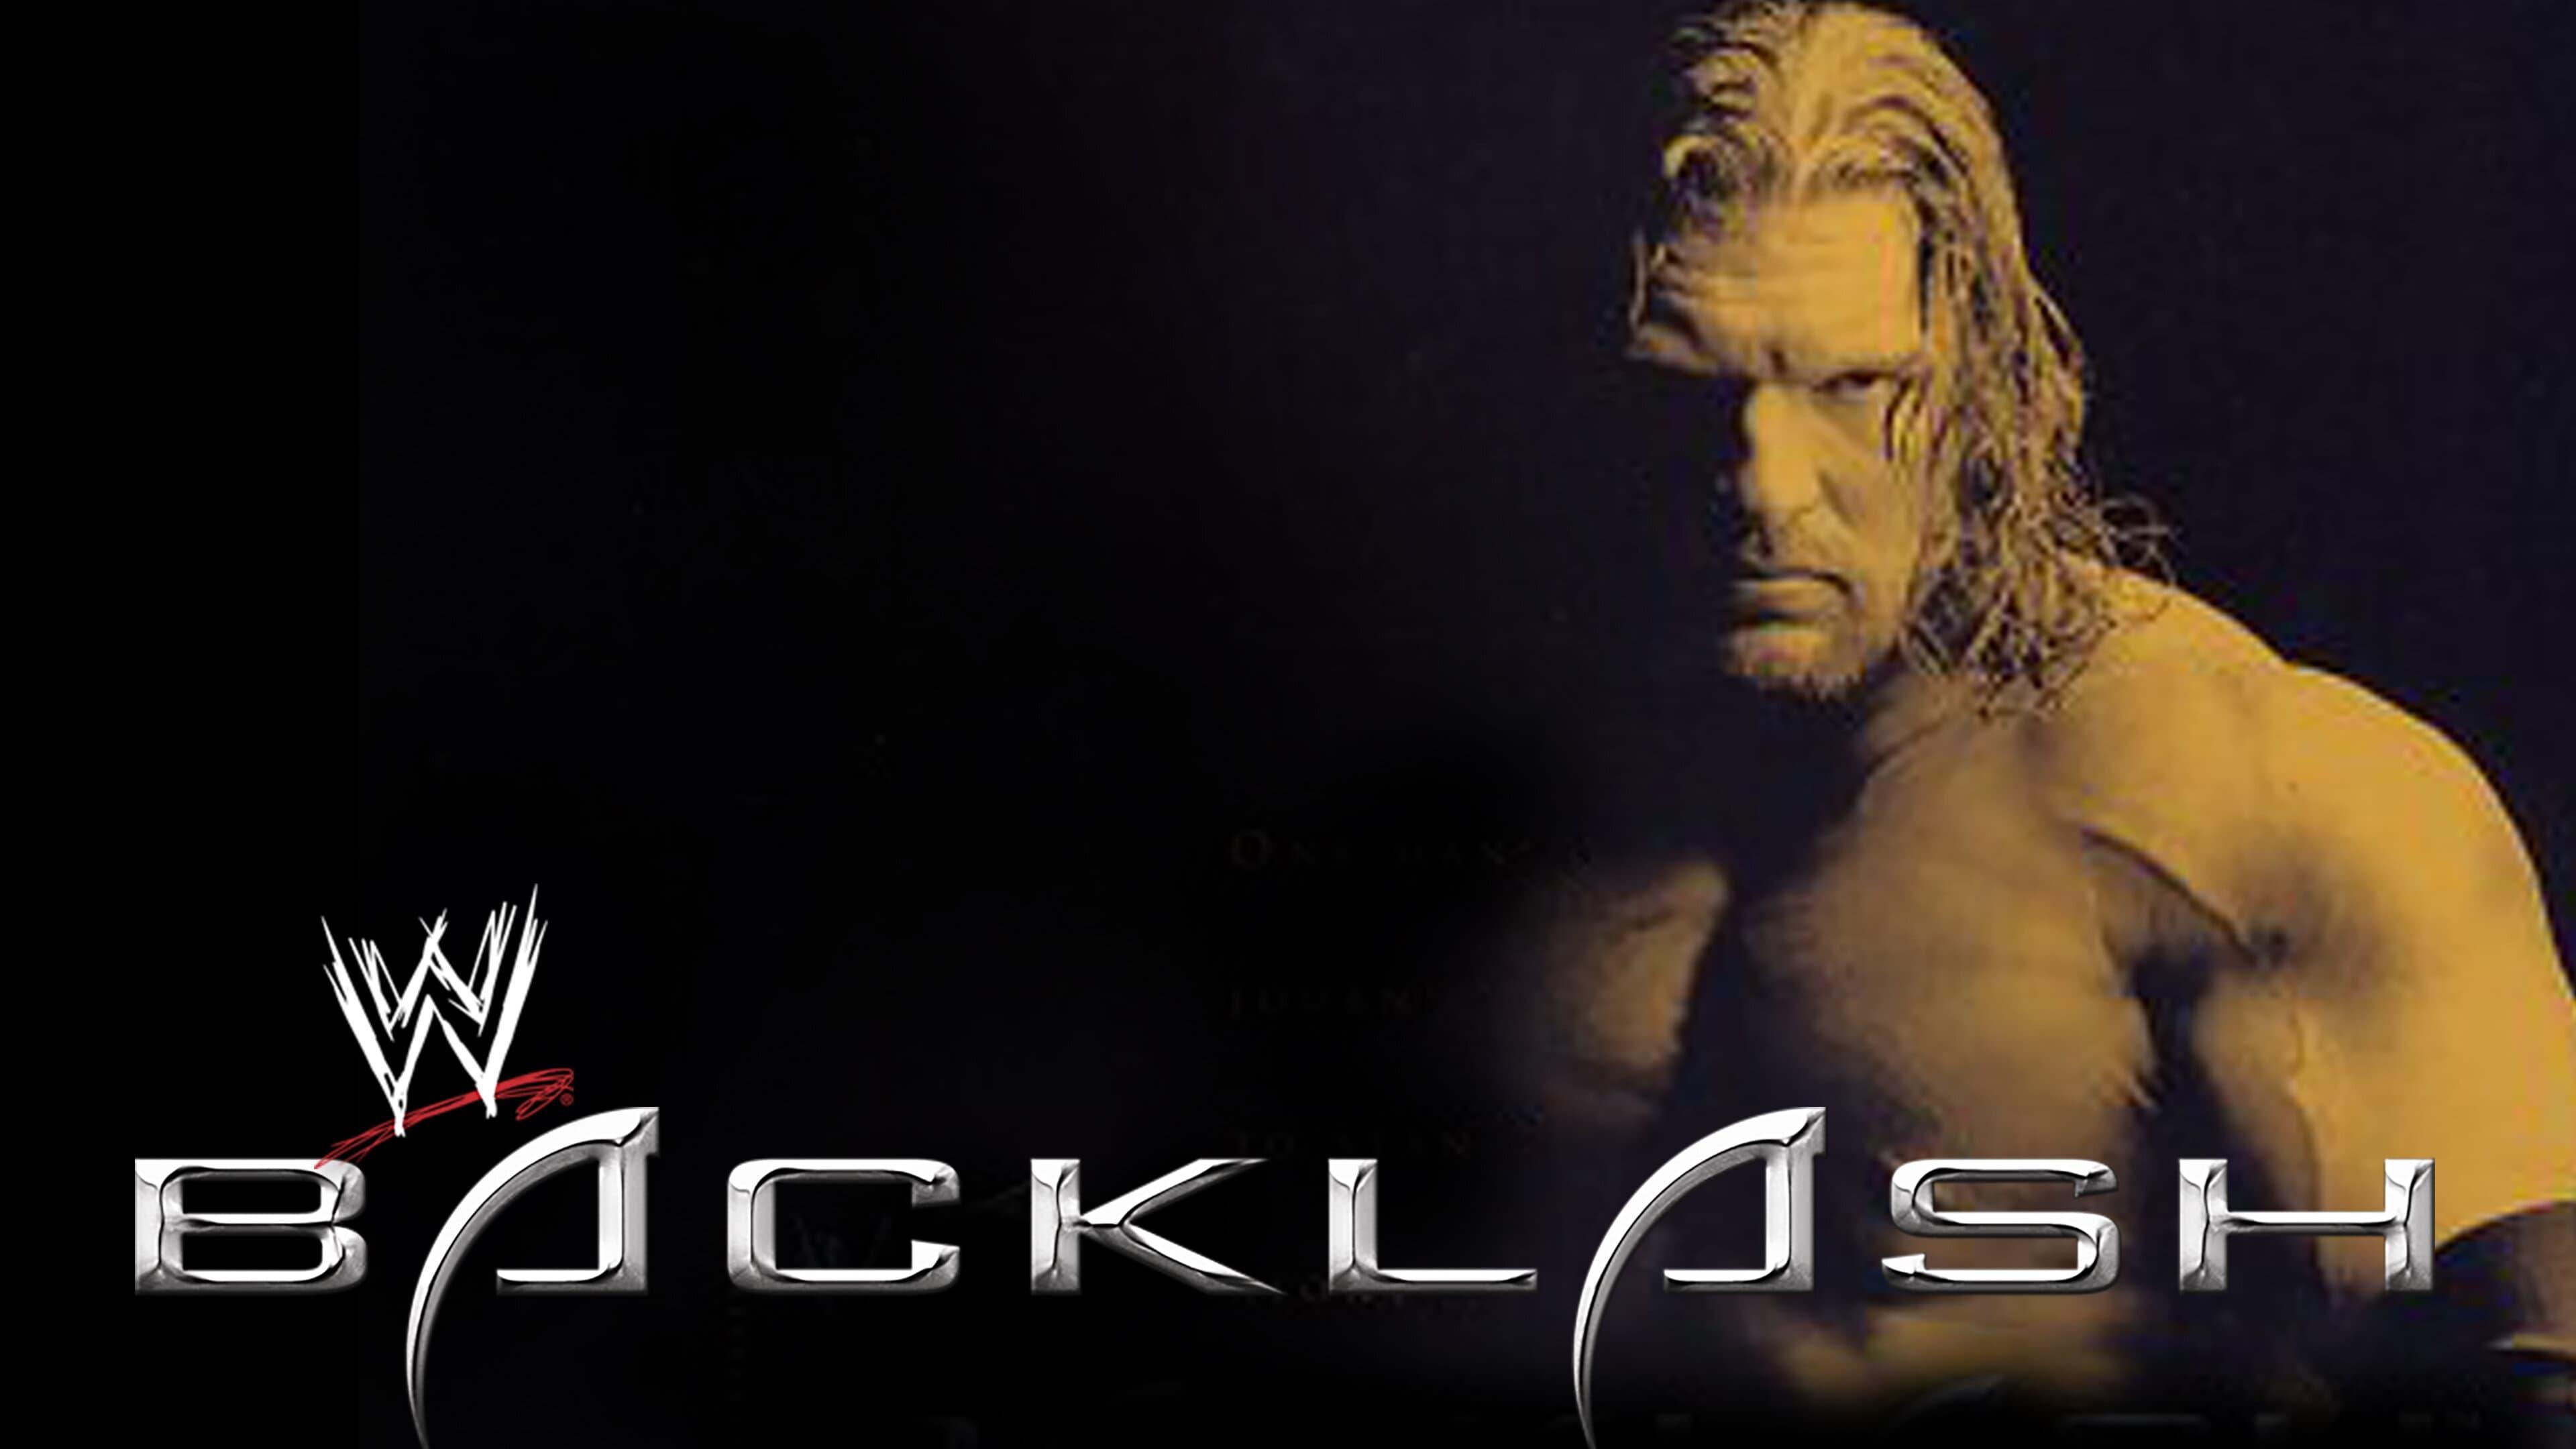 WWE Backlash 2002 backdrop